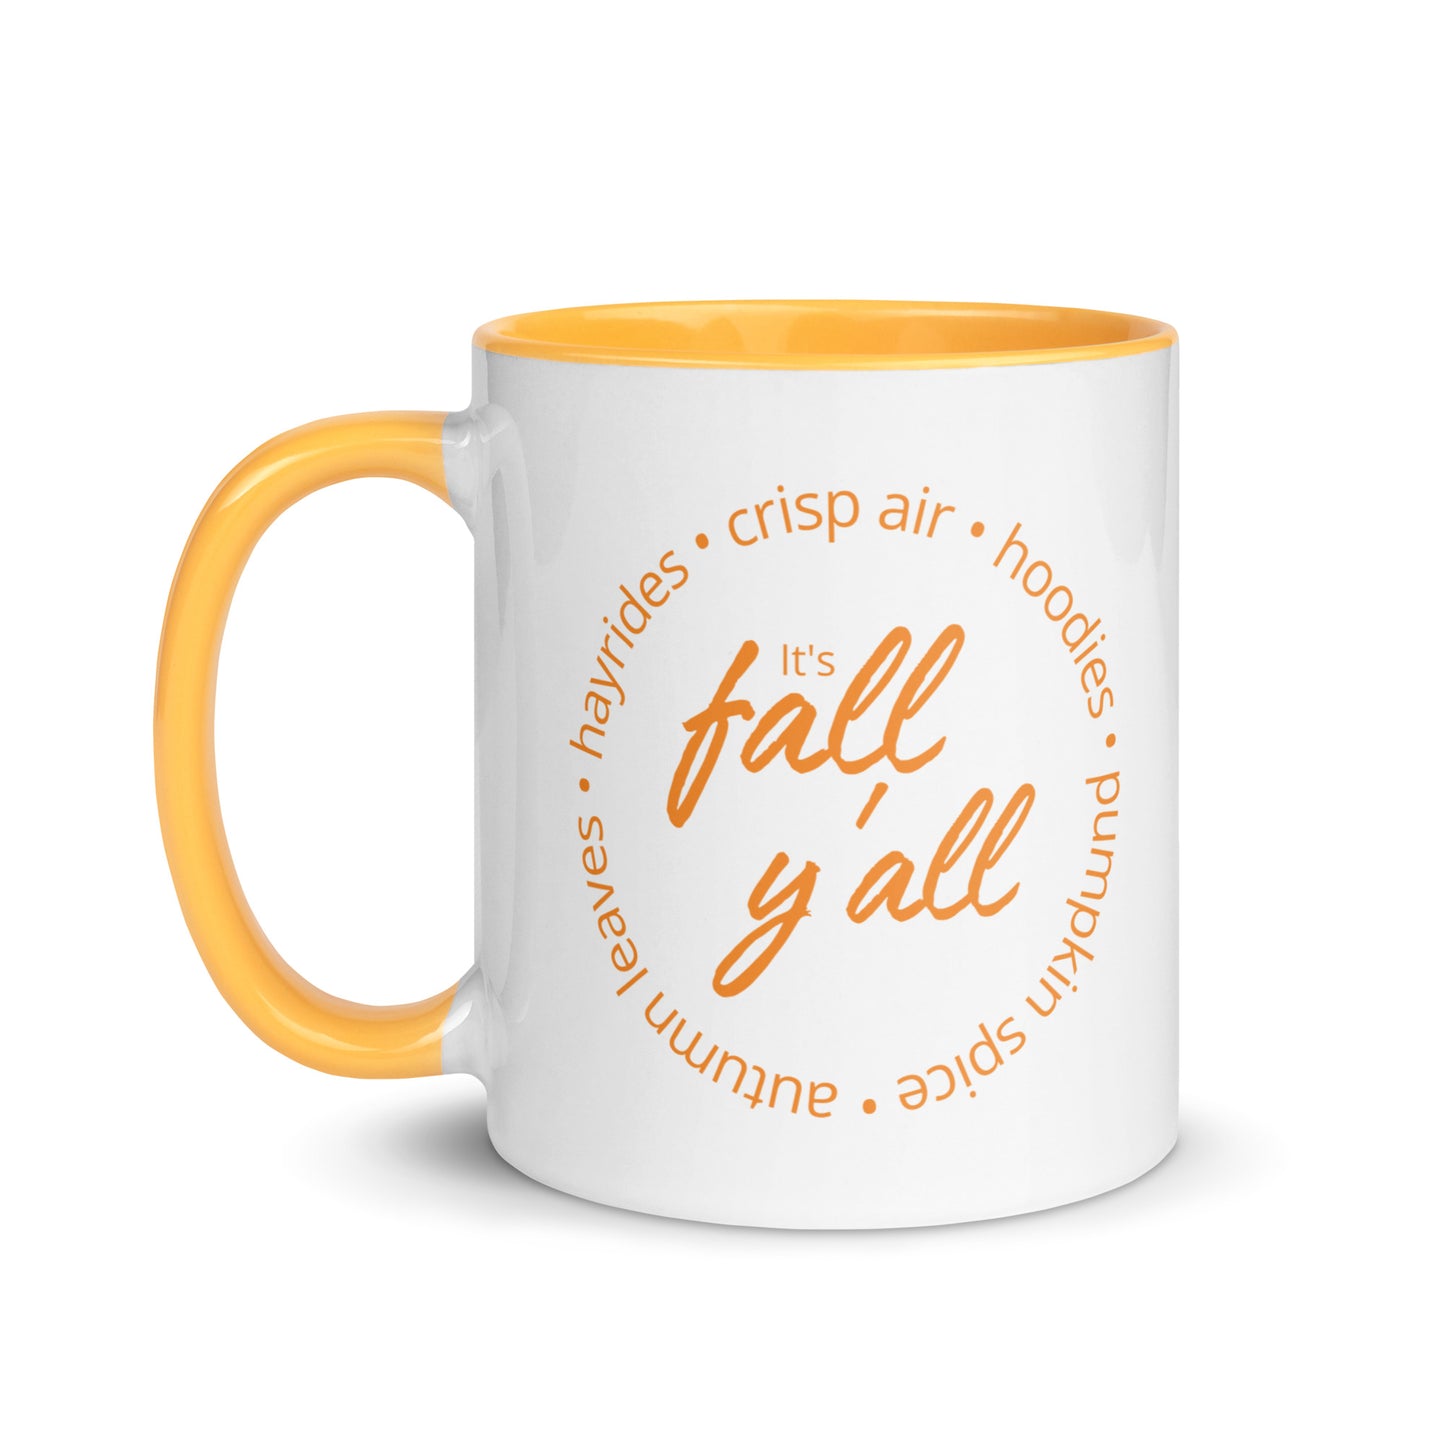 It's Fall Y'all Mug